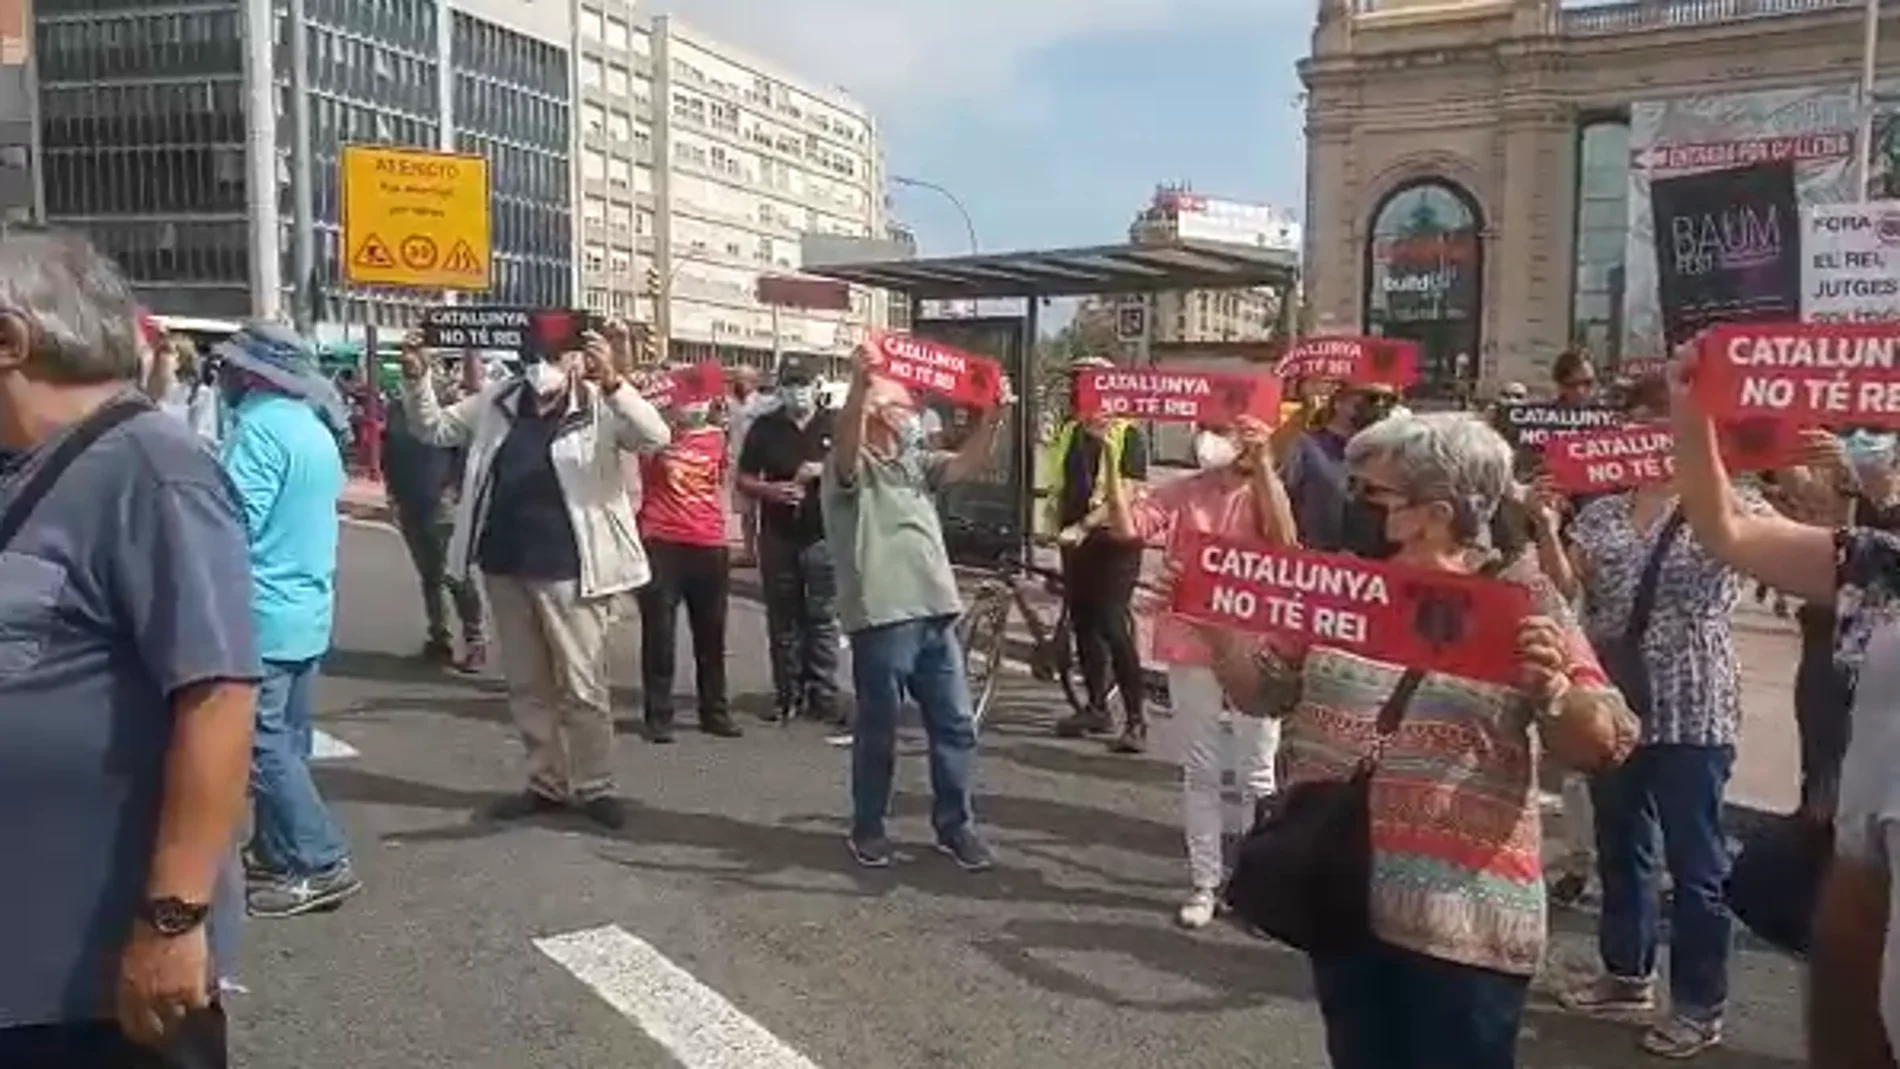 Cerca de 300 manifestantes cortan el tráfico en Barcelona con carteles donde se lee "Cataluña no tiene rey" 